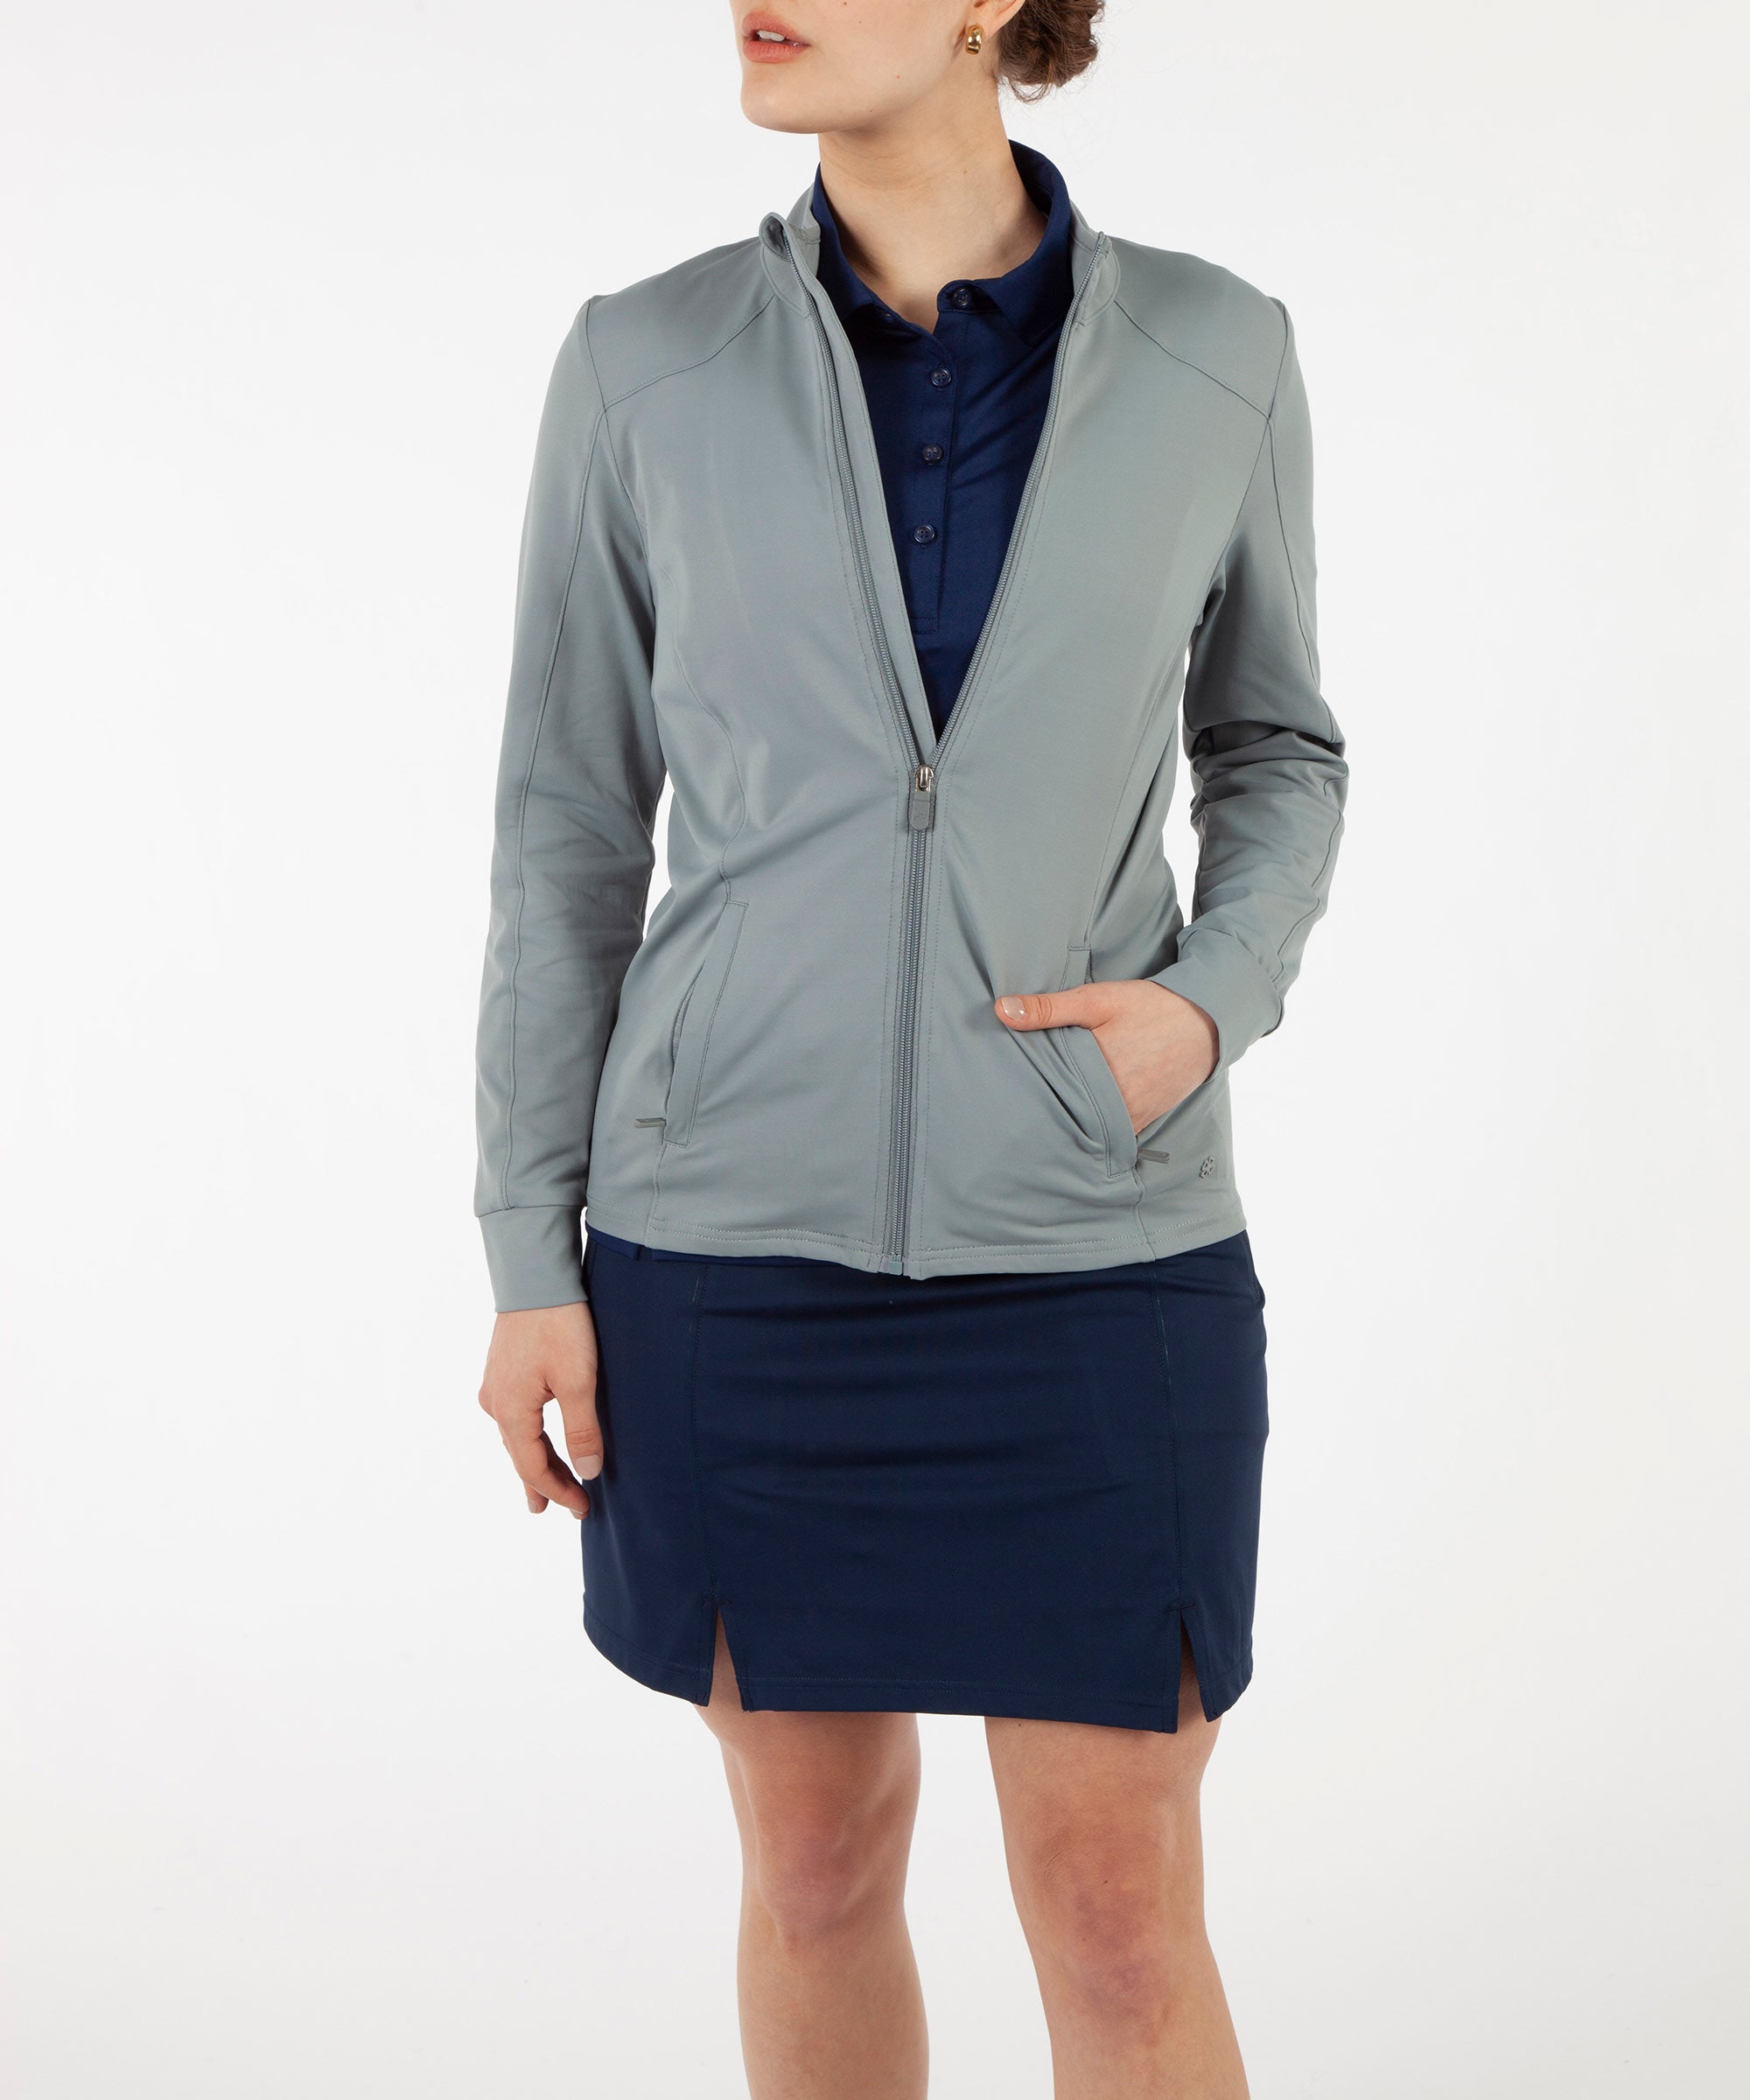 90 Degree By Reflex Women's Full Zip Long Sleeve Jacket